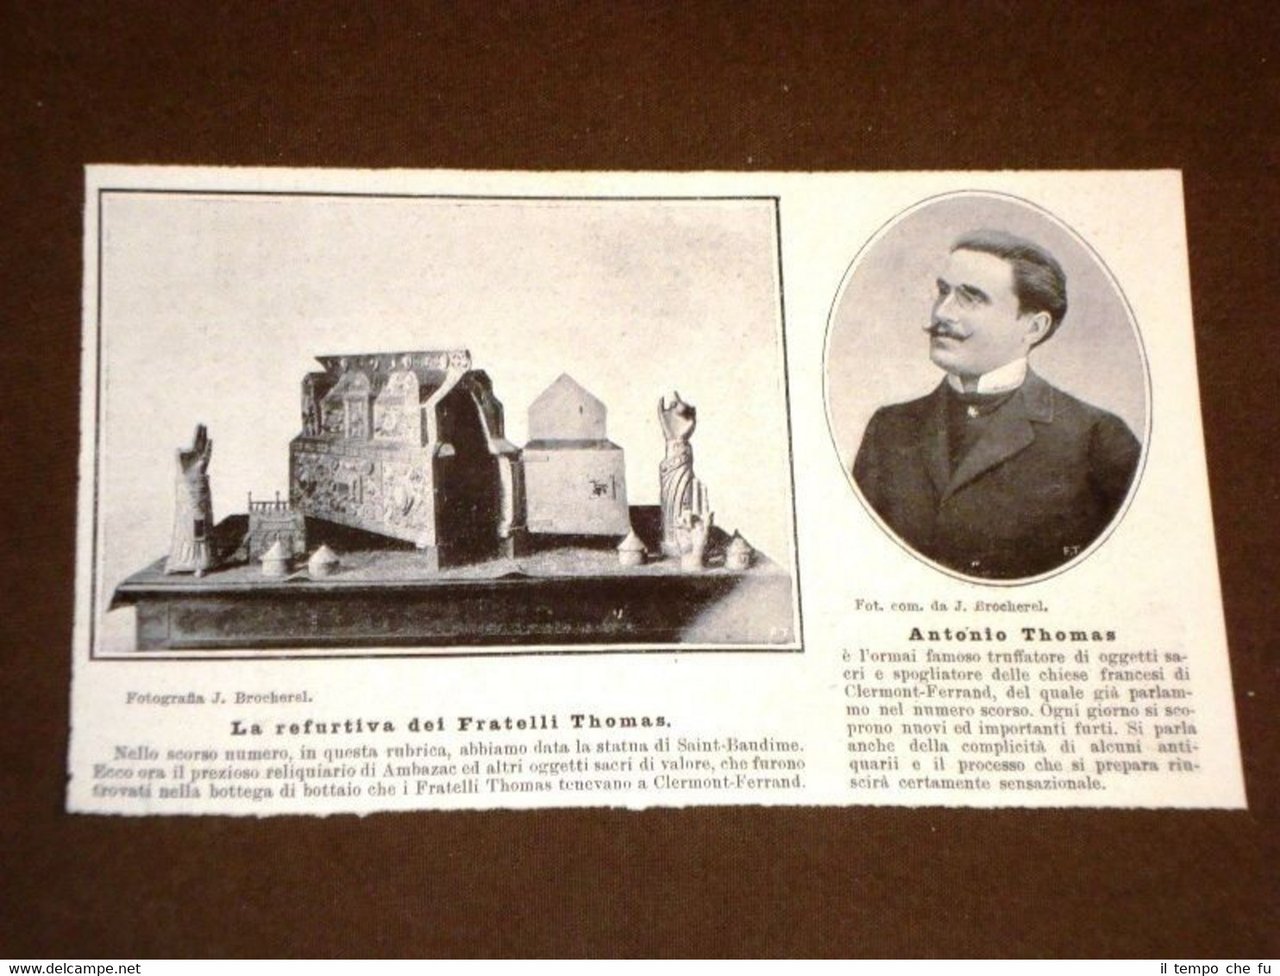 Antonio Thomas nel 1907 Truffatore d'oggetti sacri Refurtiva